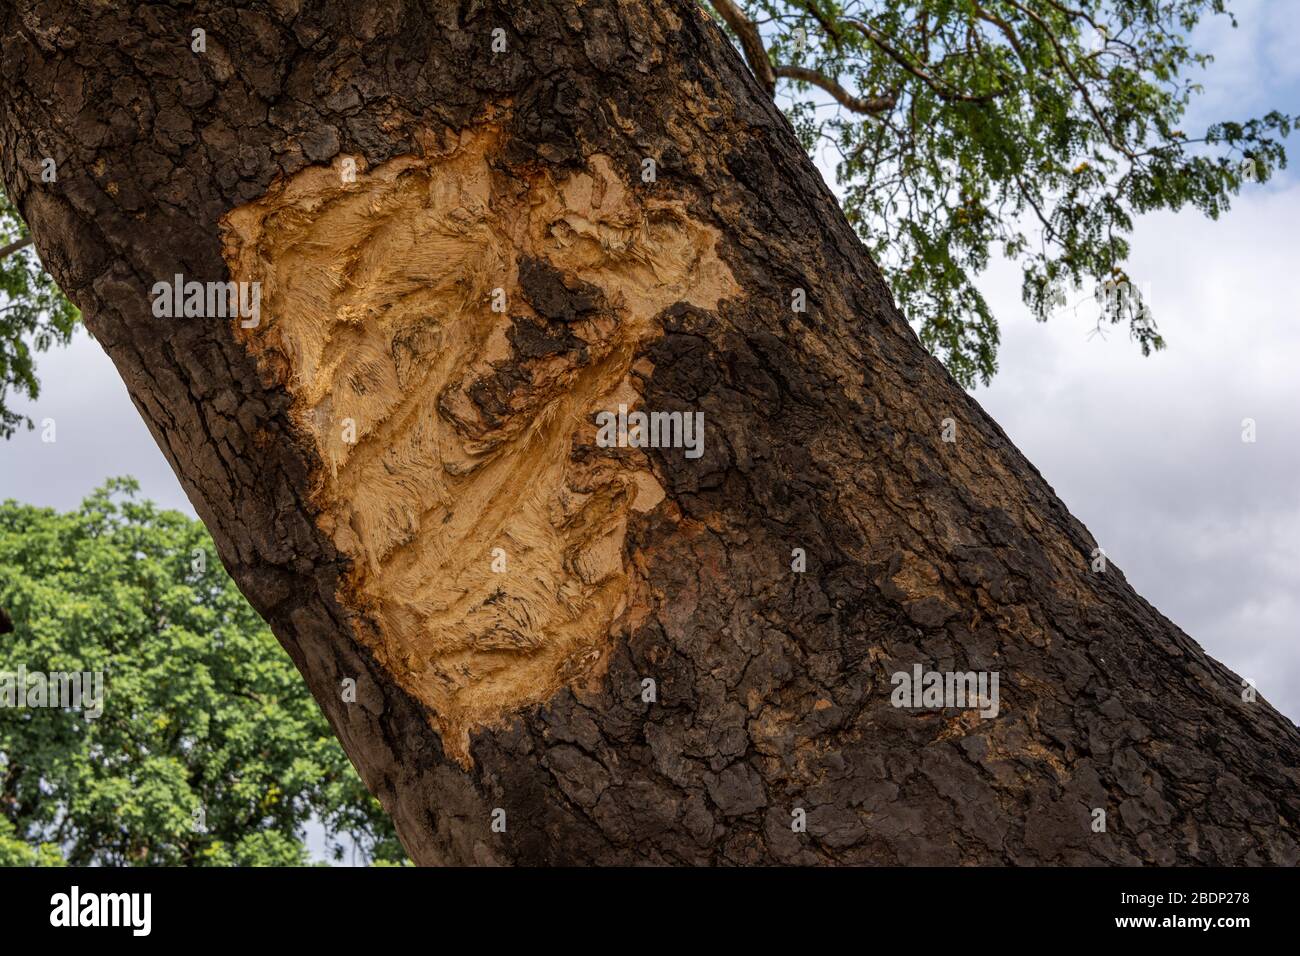 Une défense d'éléphant endommage l'écorce d'un arbre Banque D'Images